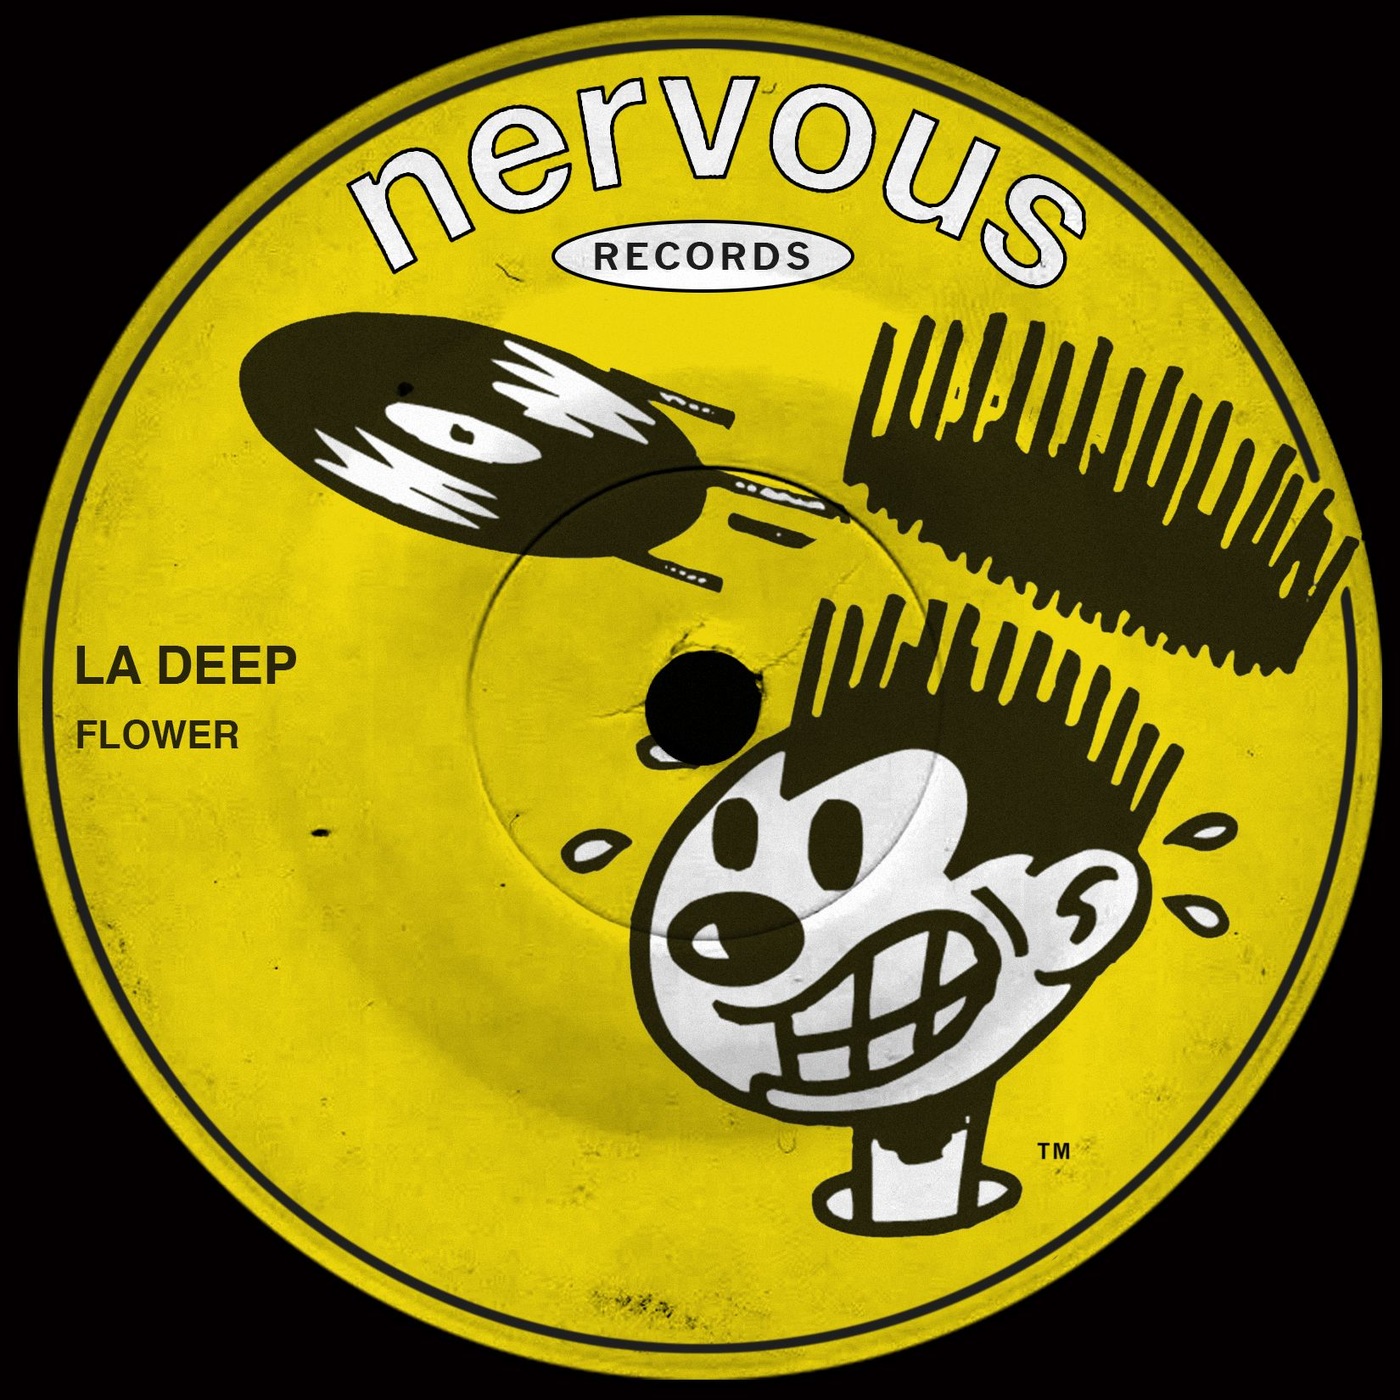 La Deep - Flower / Nervous Records